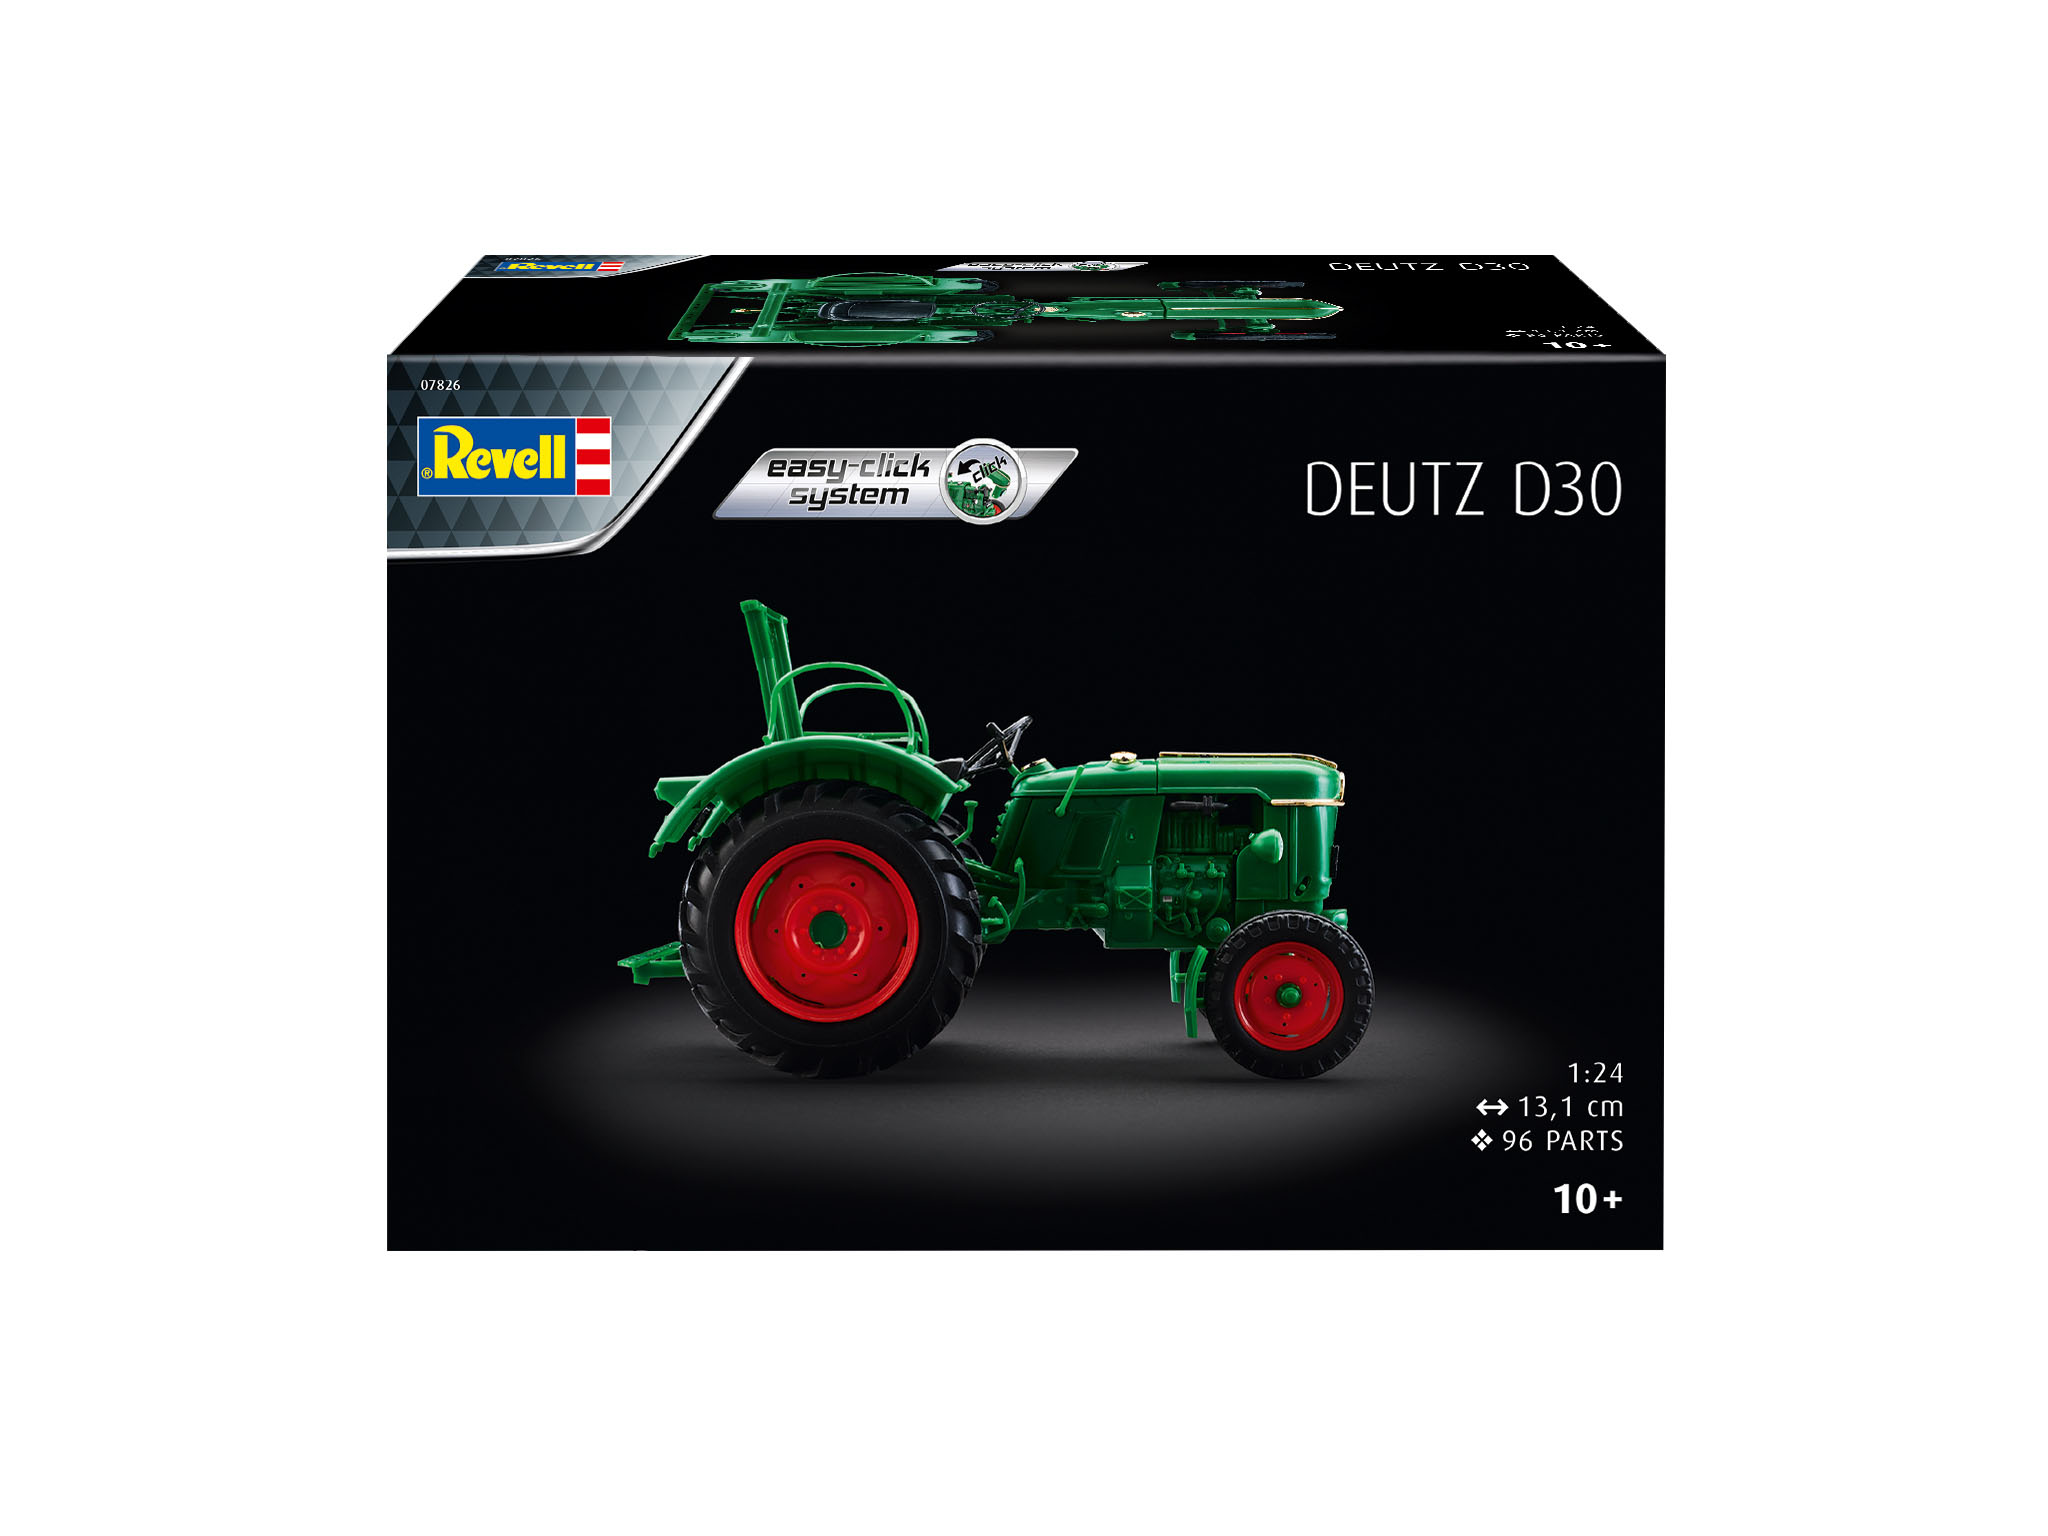 Deutz D30 - 07826